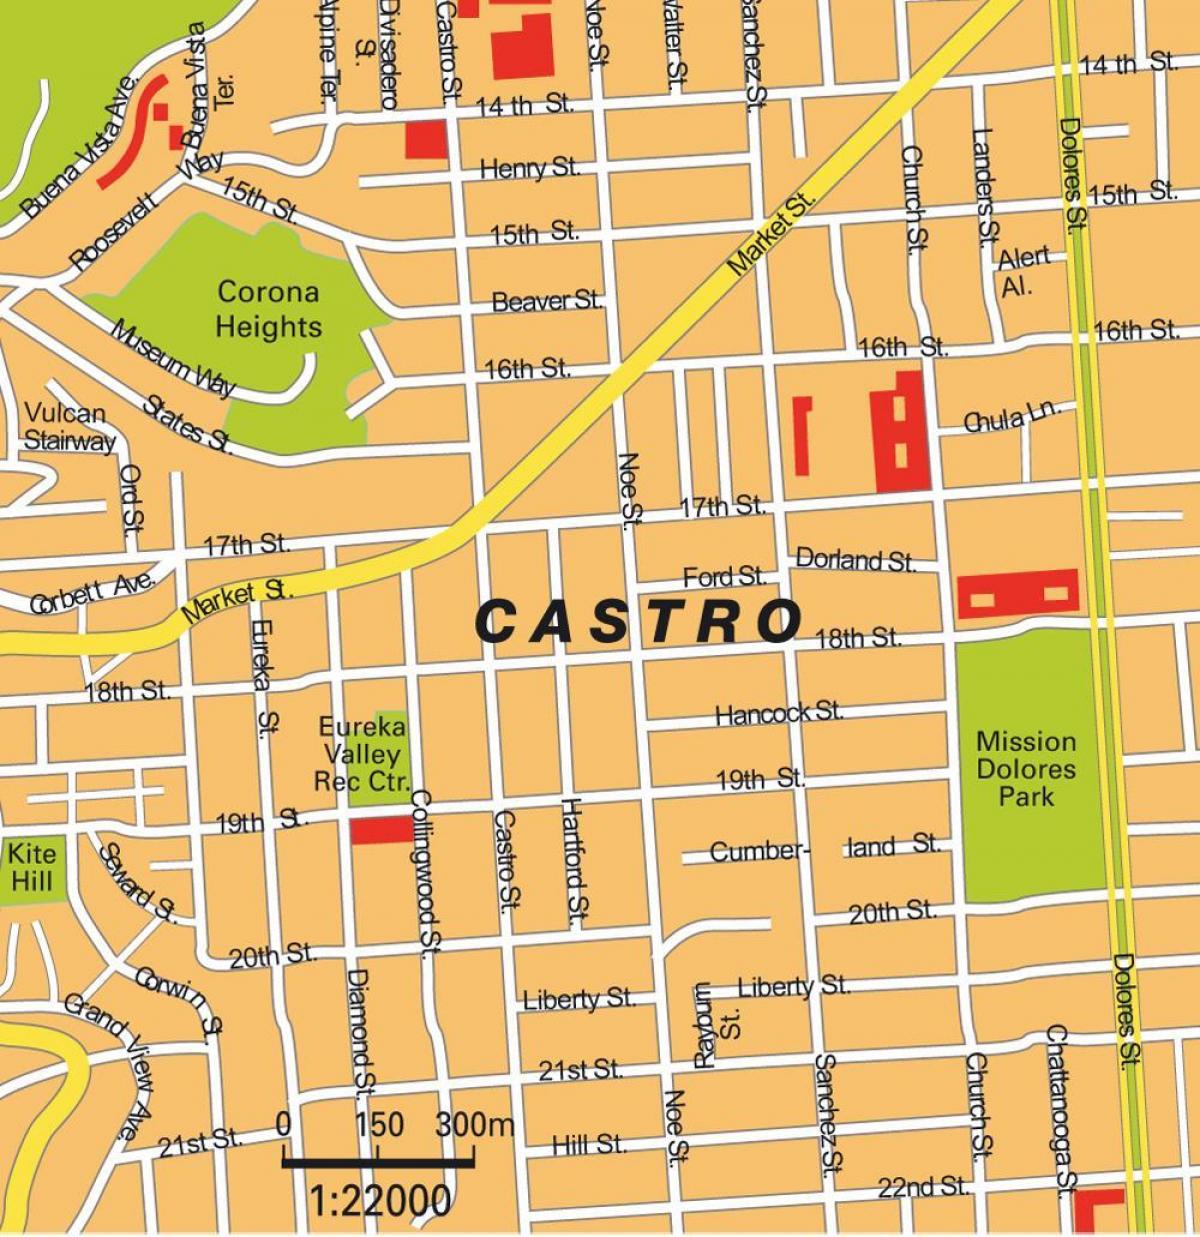 Mappa di castro di San Francisco